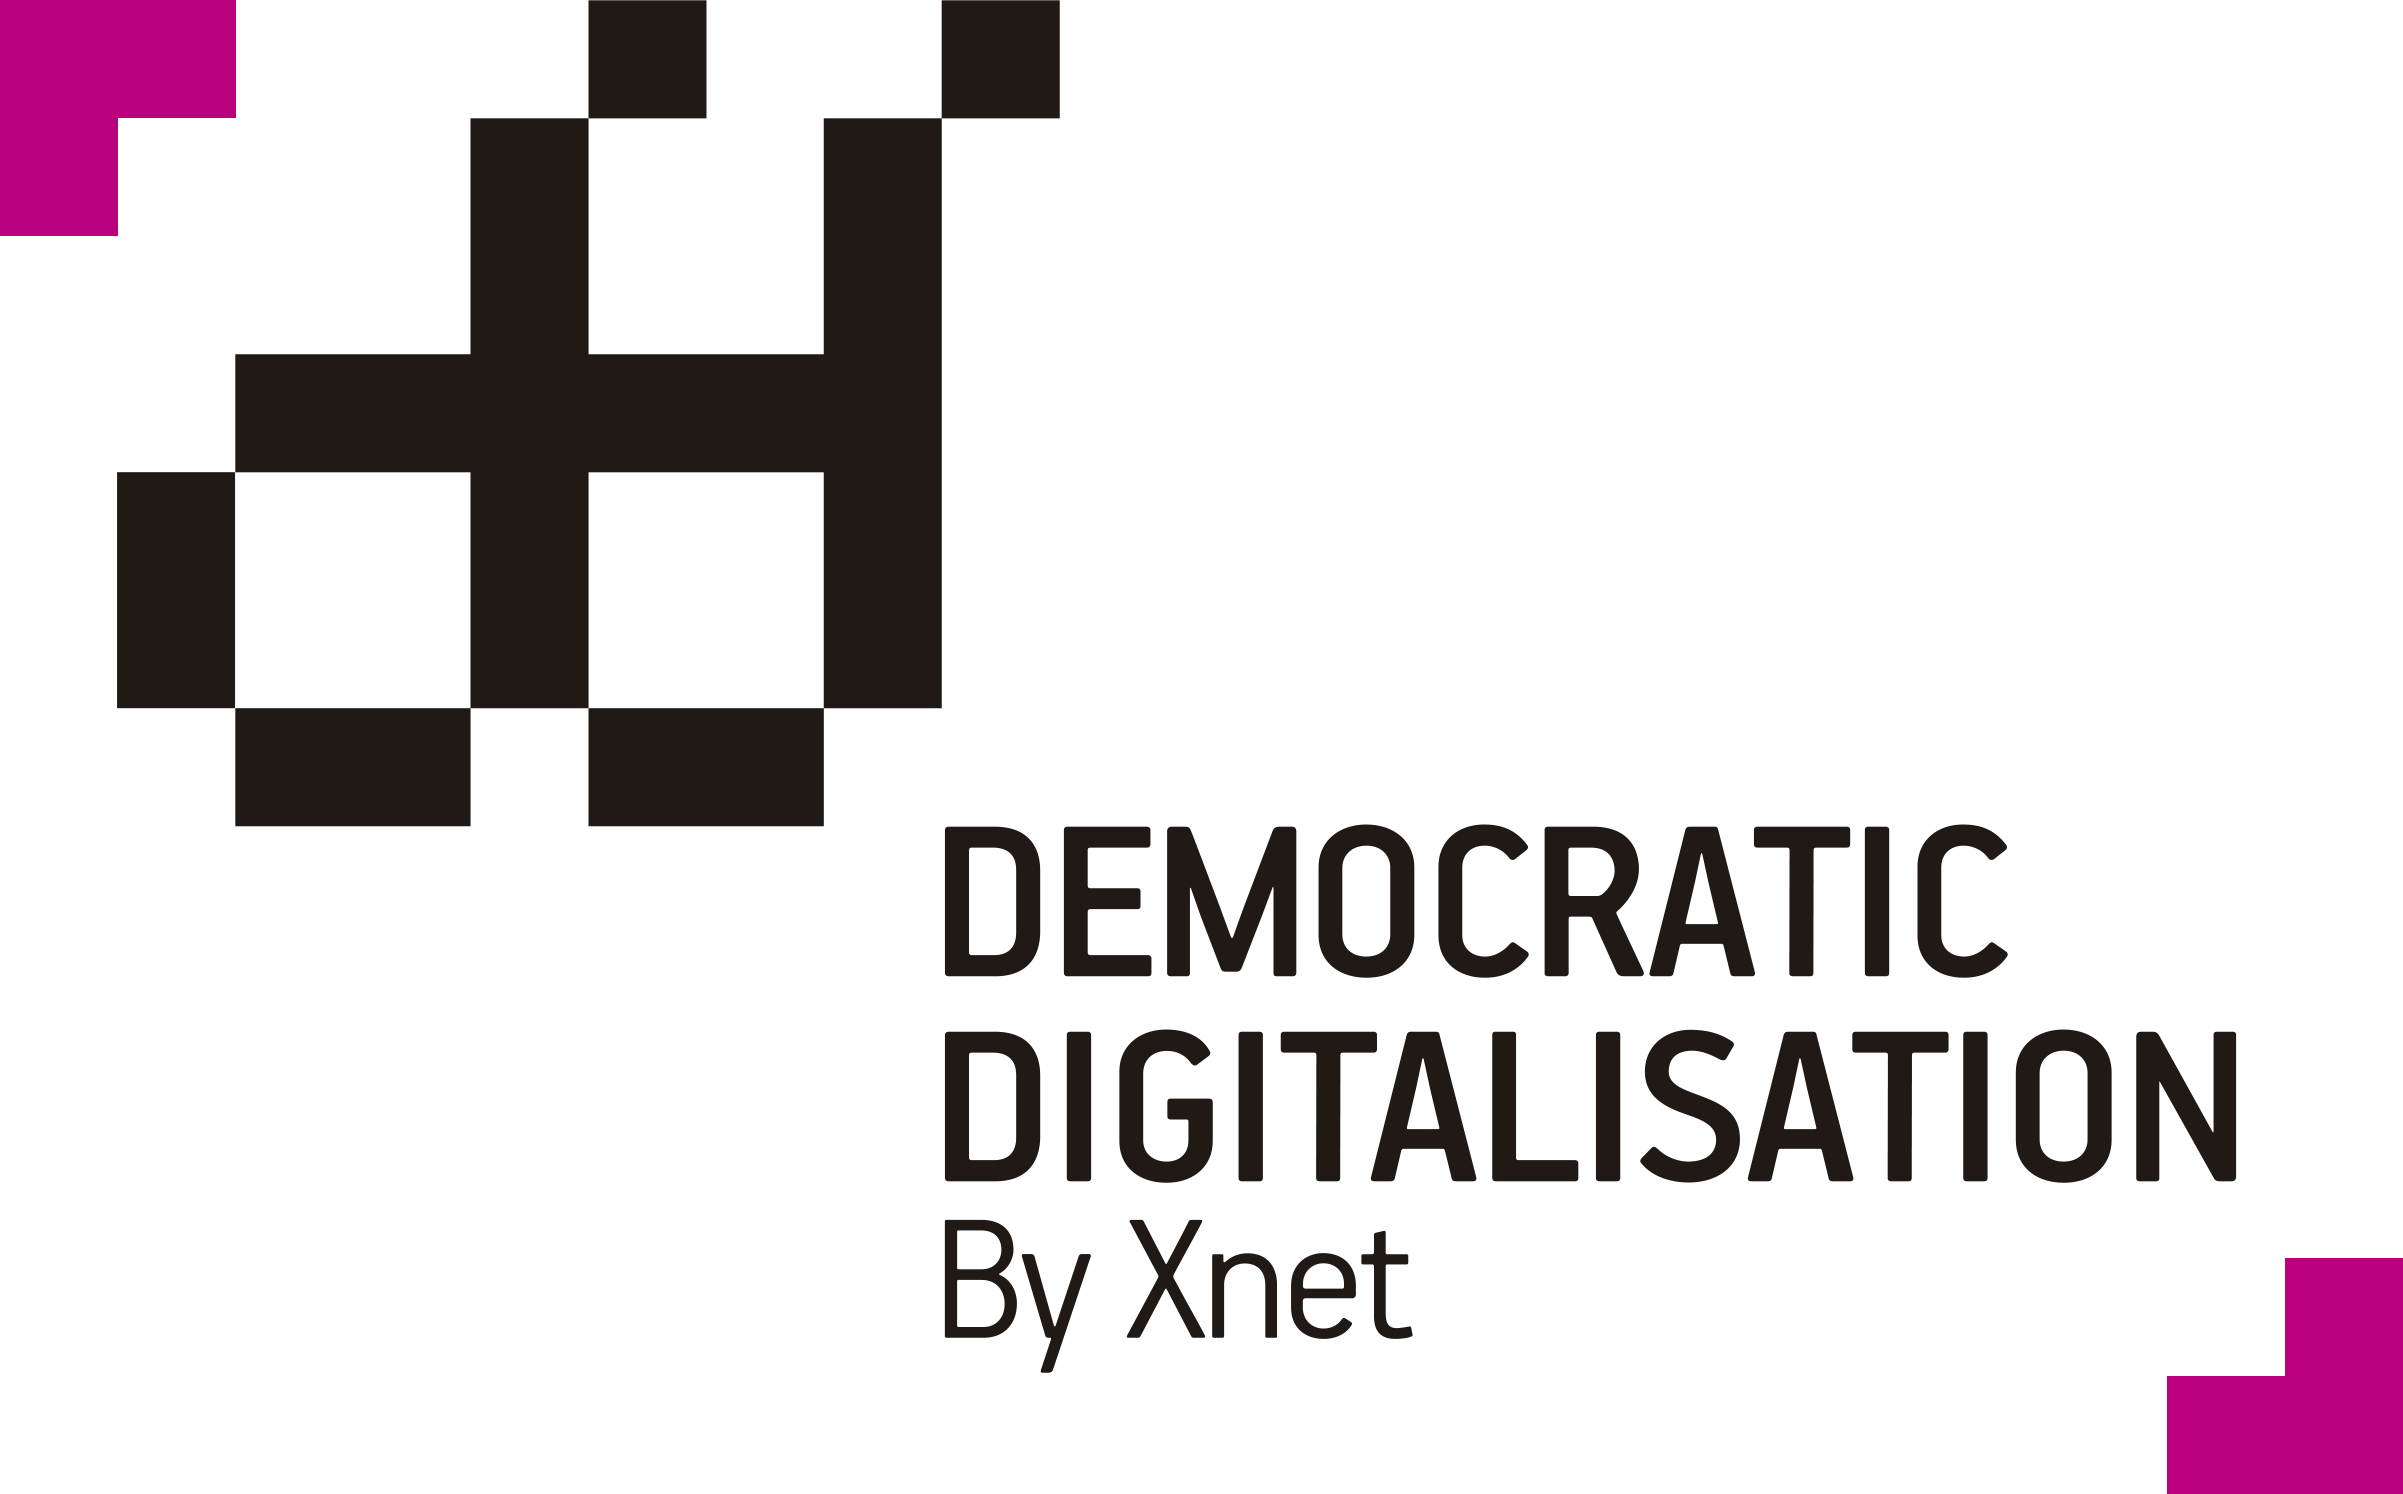 Curs | Digitalització Democràtica i Open Edtech